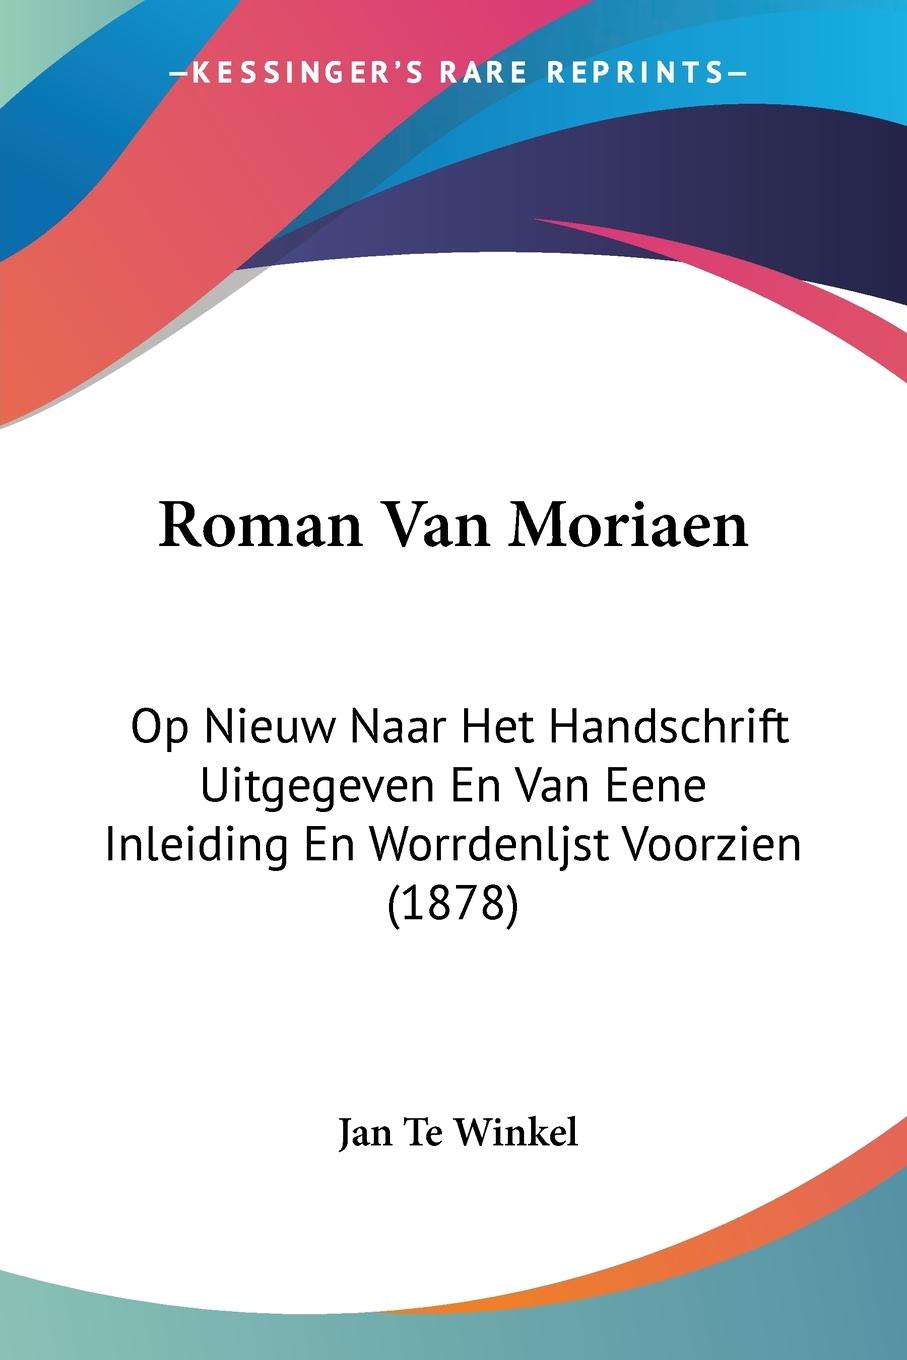 Roman Van Moriaen - Te Winkel, Jan